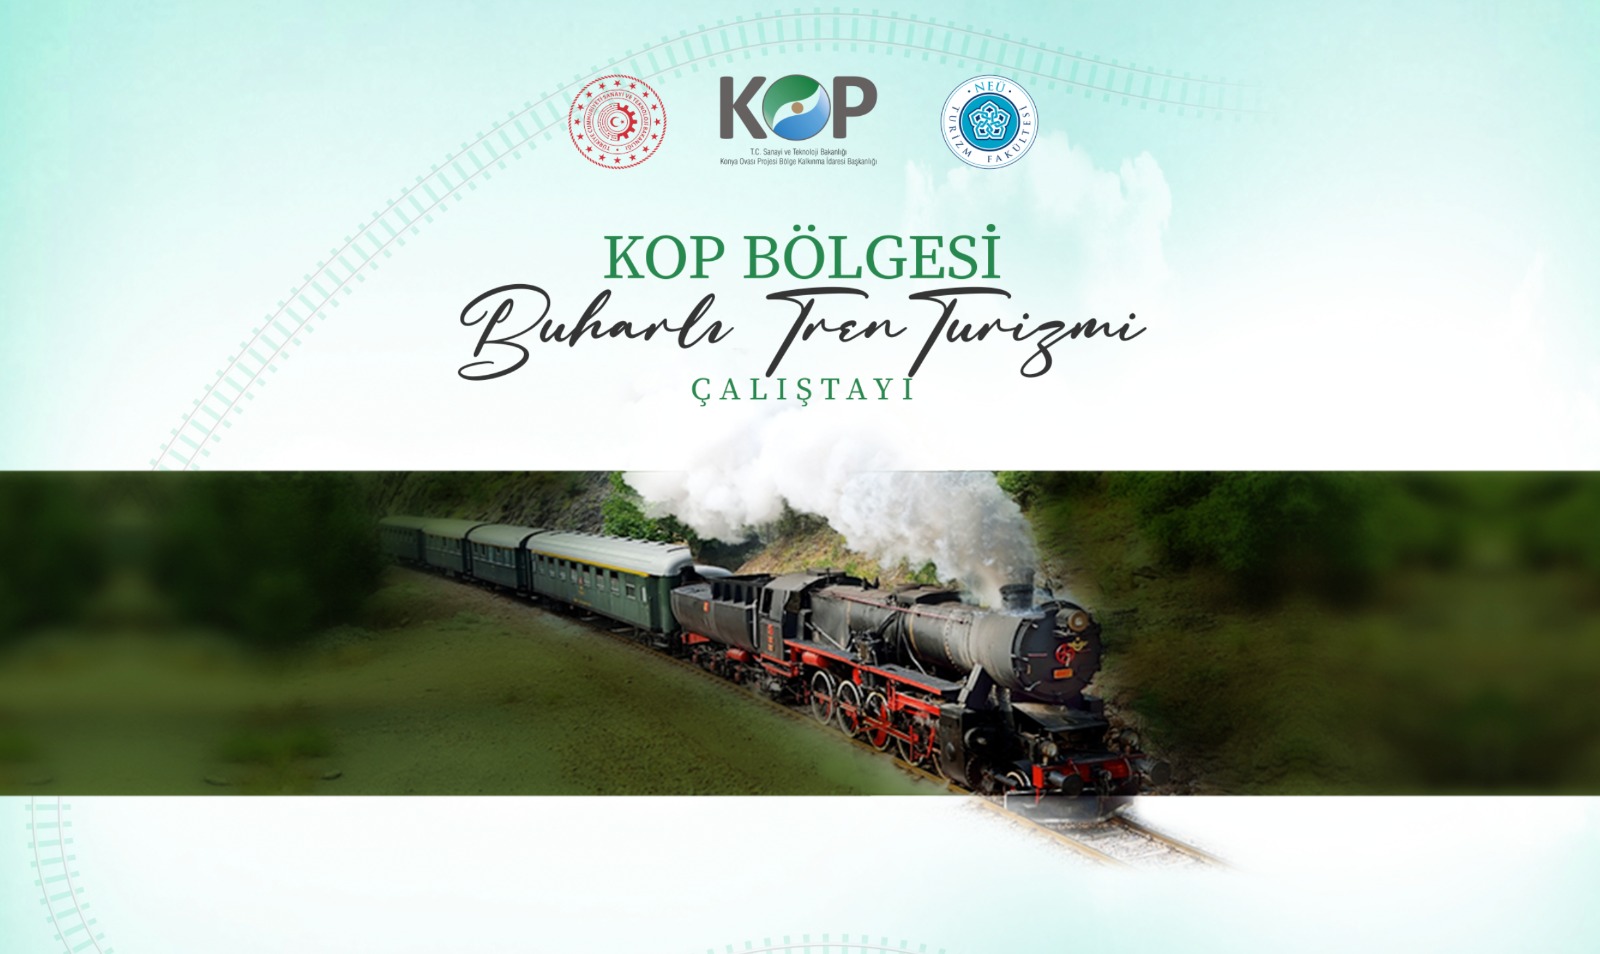 KOP Bölgesi İçin İstihdam Odaklı Nostaljik Buharlı Tren Turizmi Çalıştayı